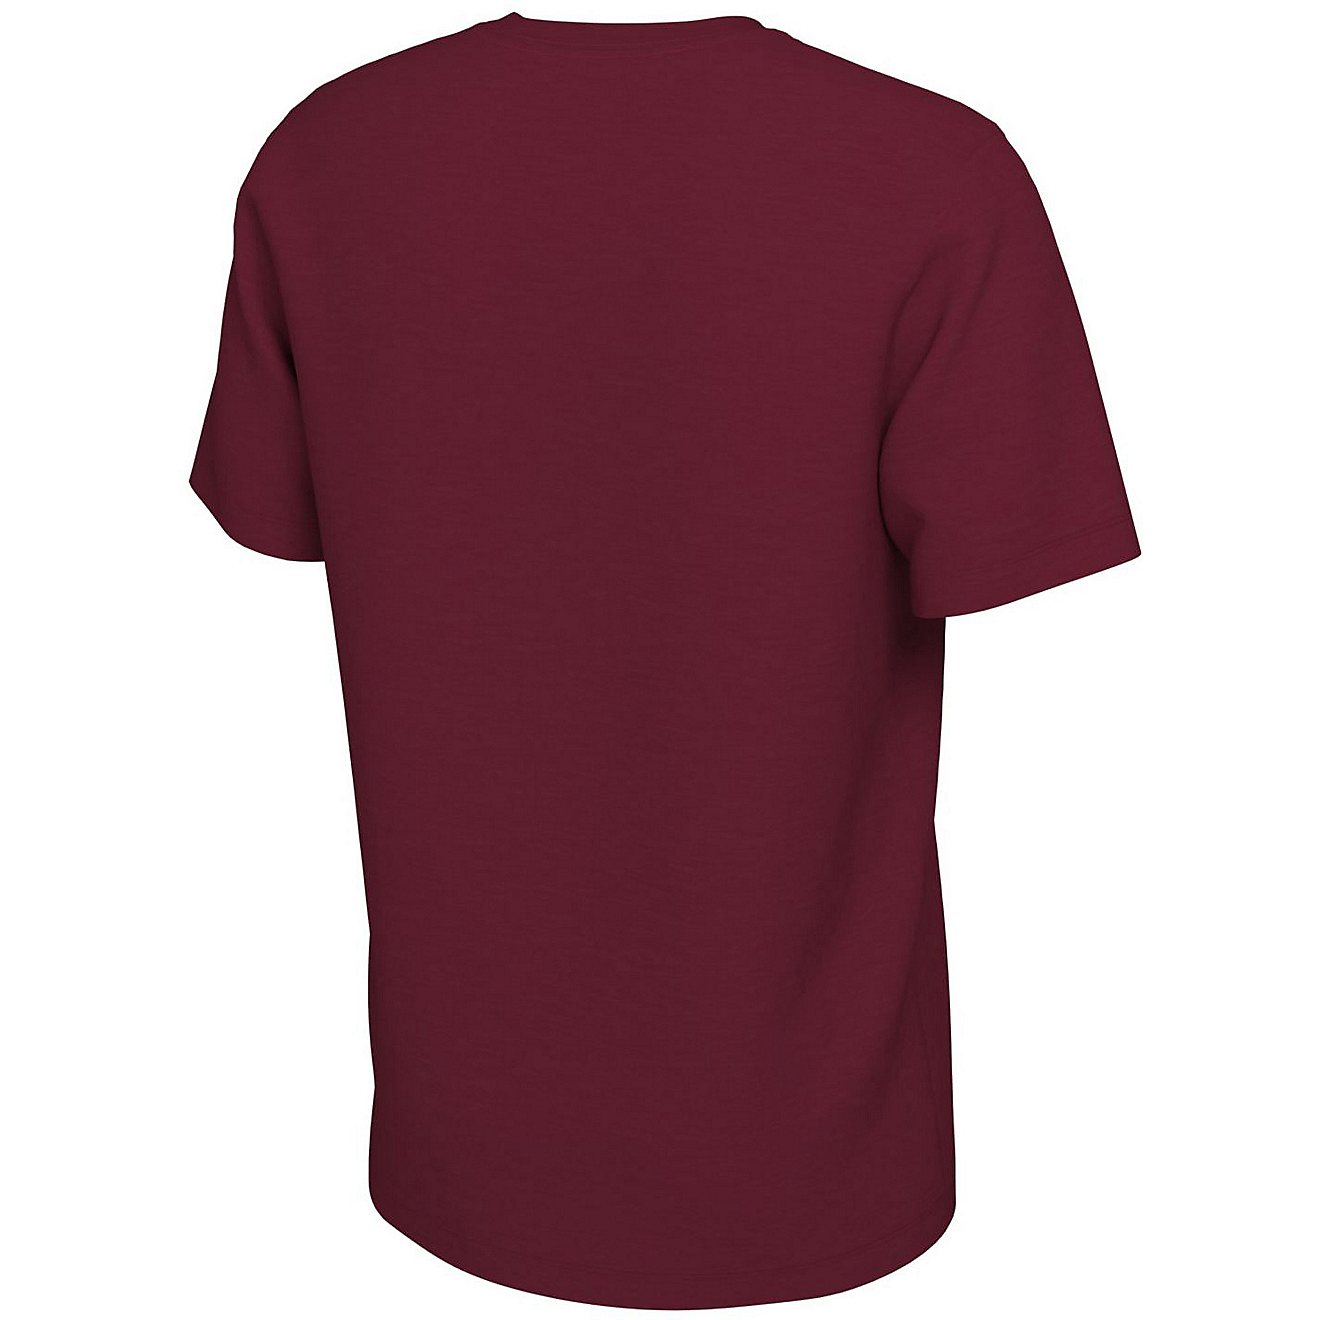 Nike Men's University of Alabama Jordan Mantra Graphic T-shirt                                                                   - view number 2